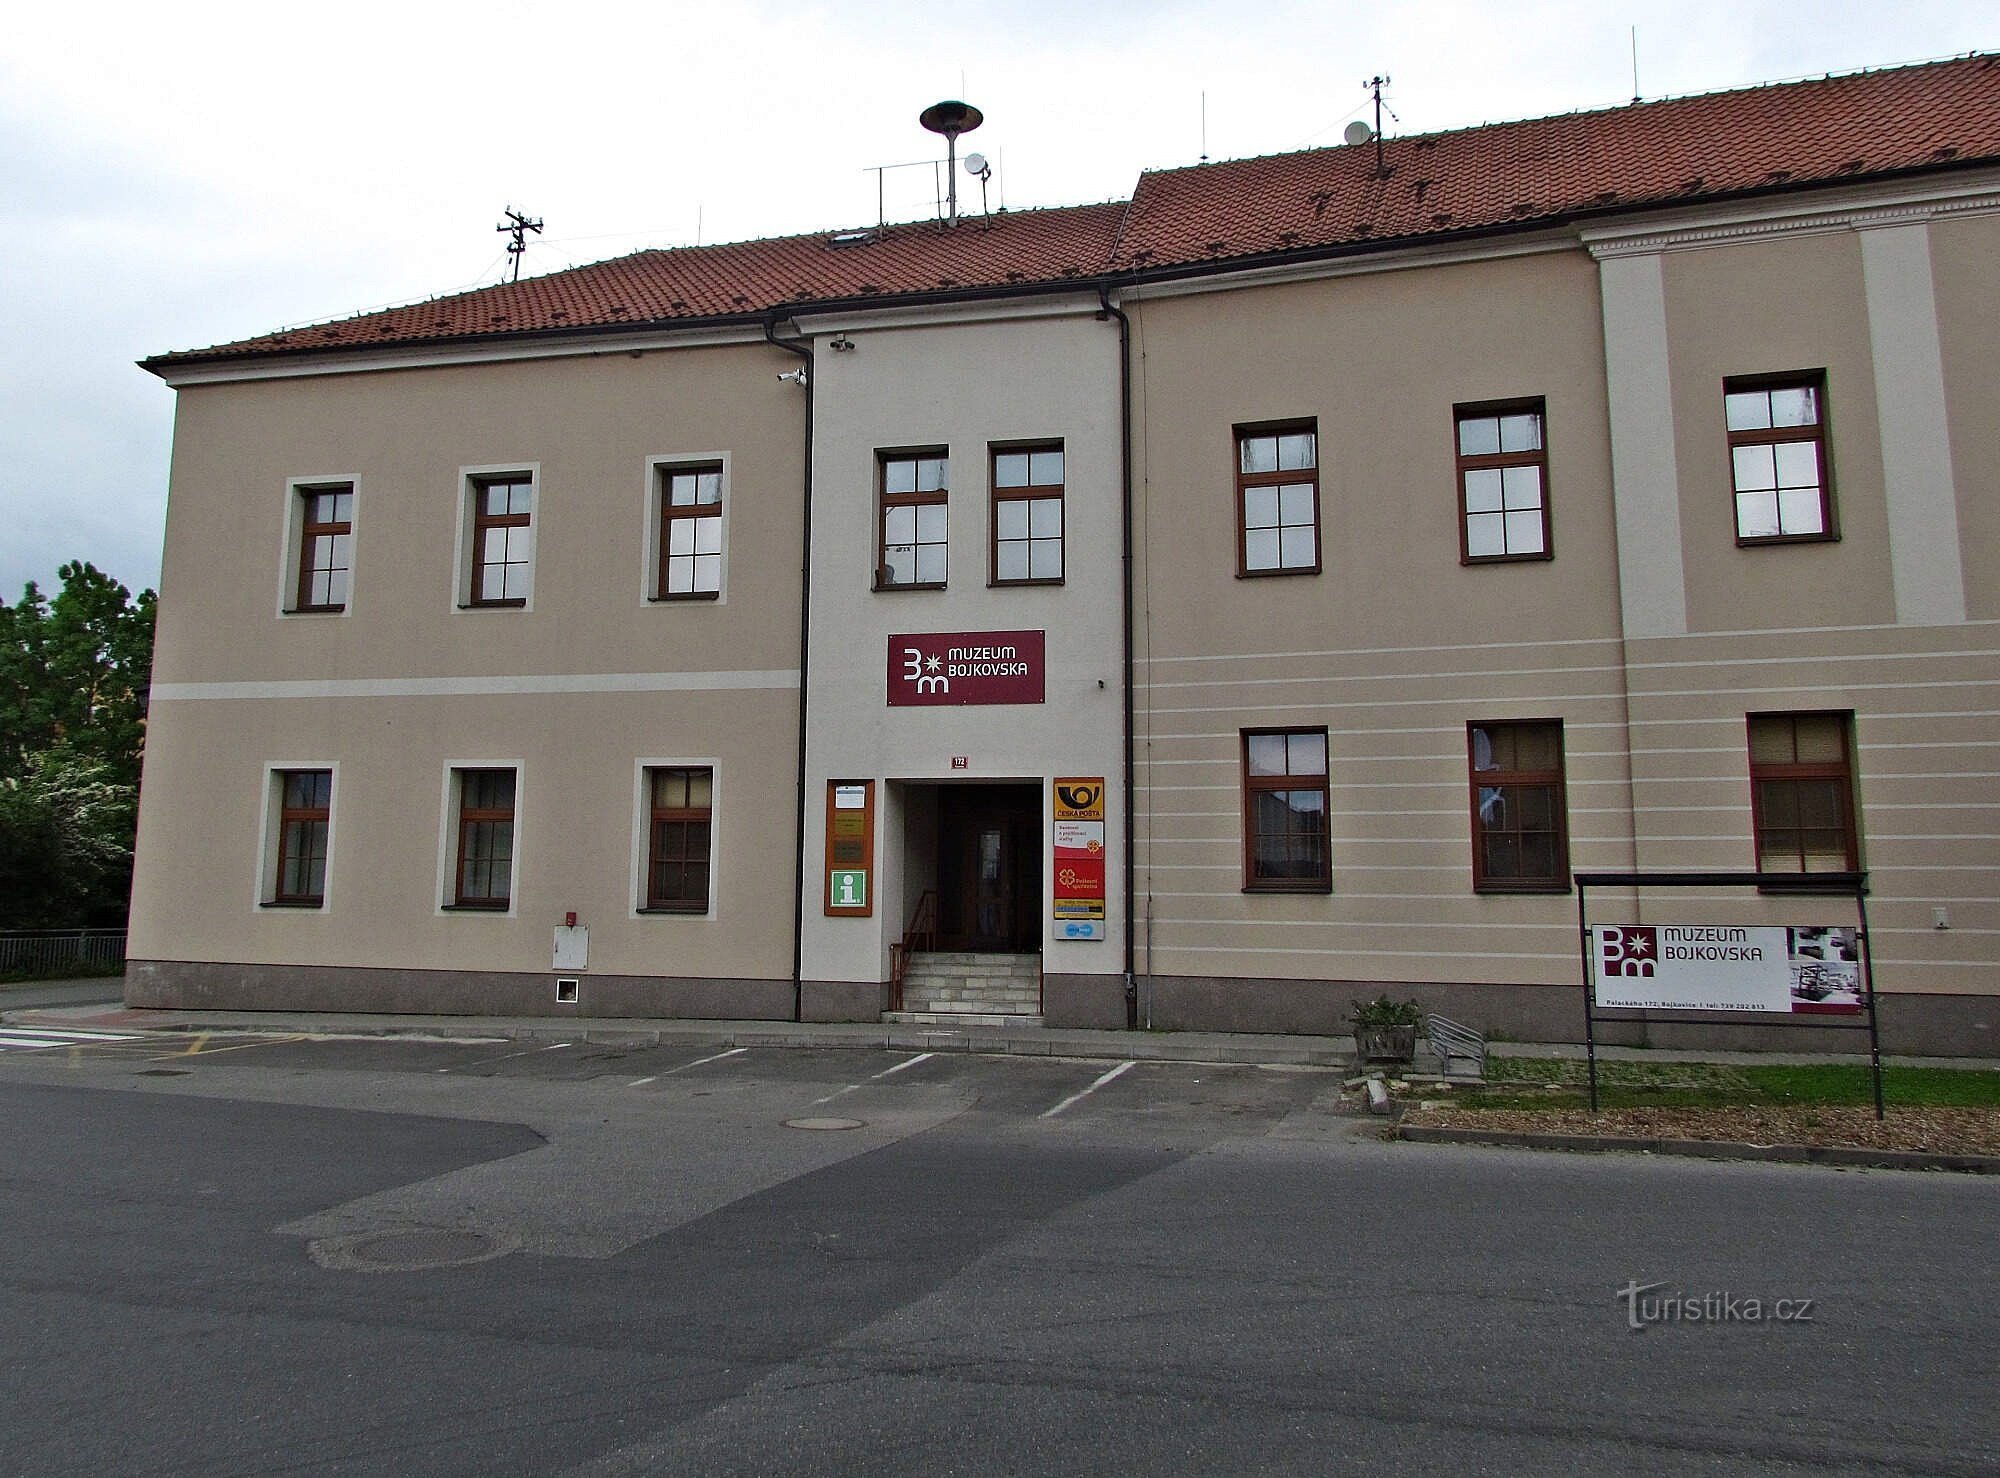 Kierros Bojkovska-museossa